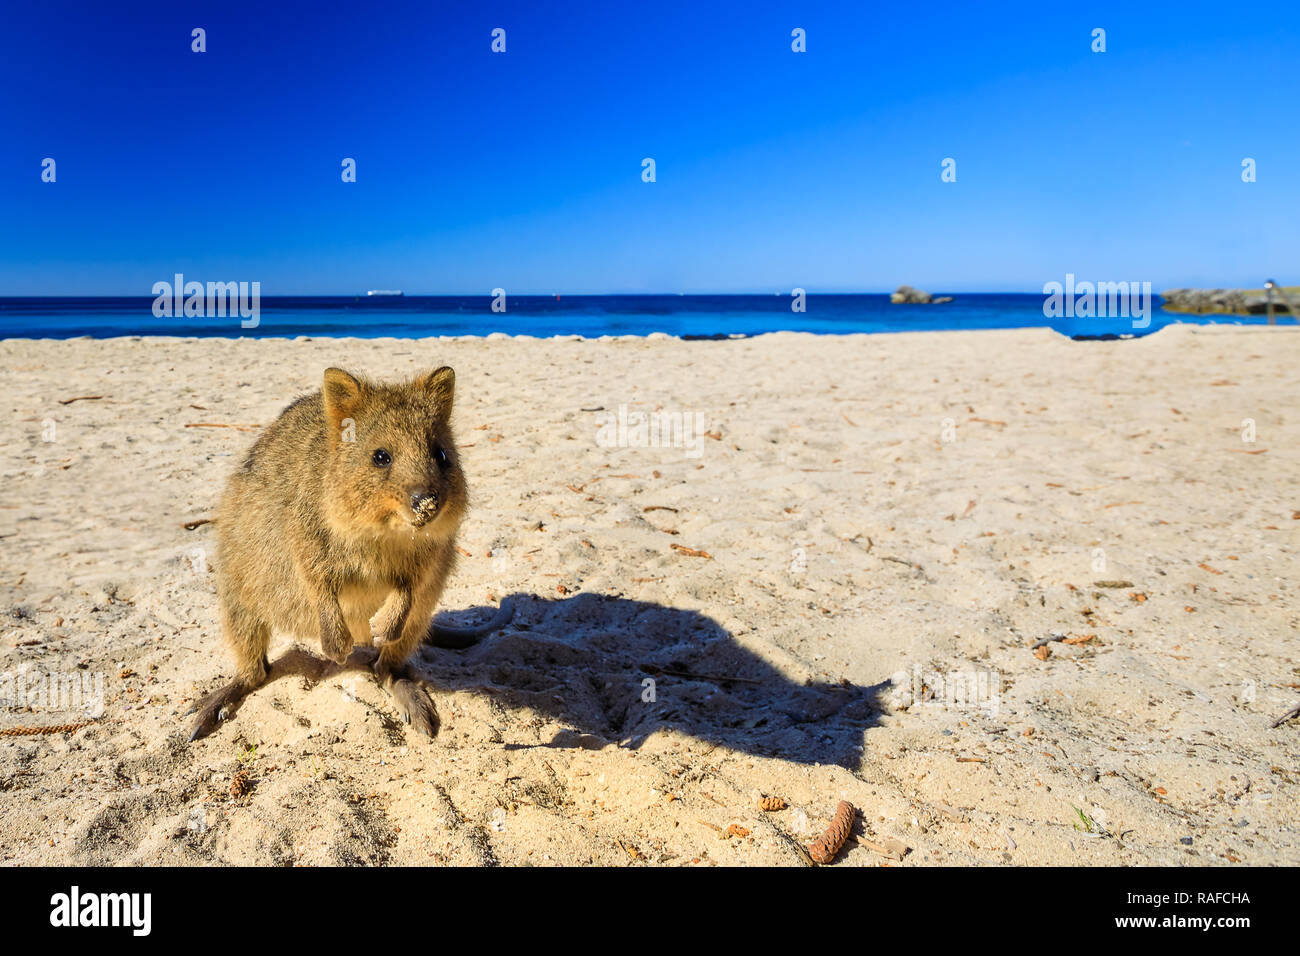 Un mignon Quokka sur la plage du bassin à Rottnest Island en Australie occidentale. Quokka est considéré comme l'animal le plus heureux au monde. La saison d'été. Ciel bleu avec copie espace. Banque D'Images